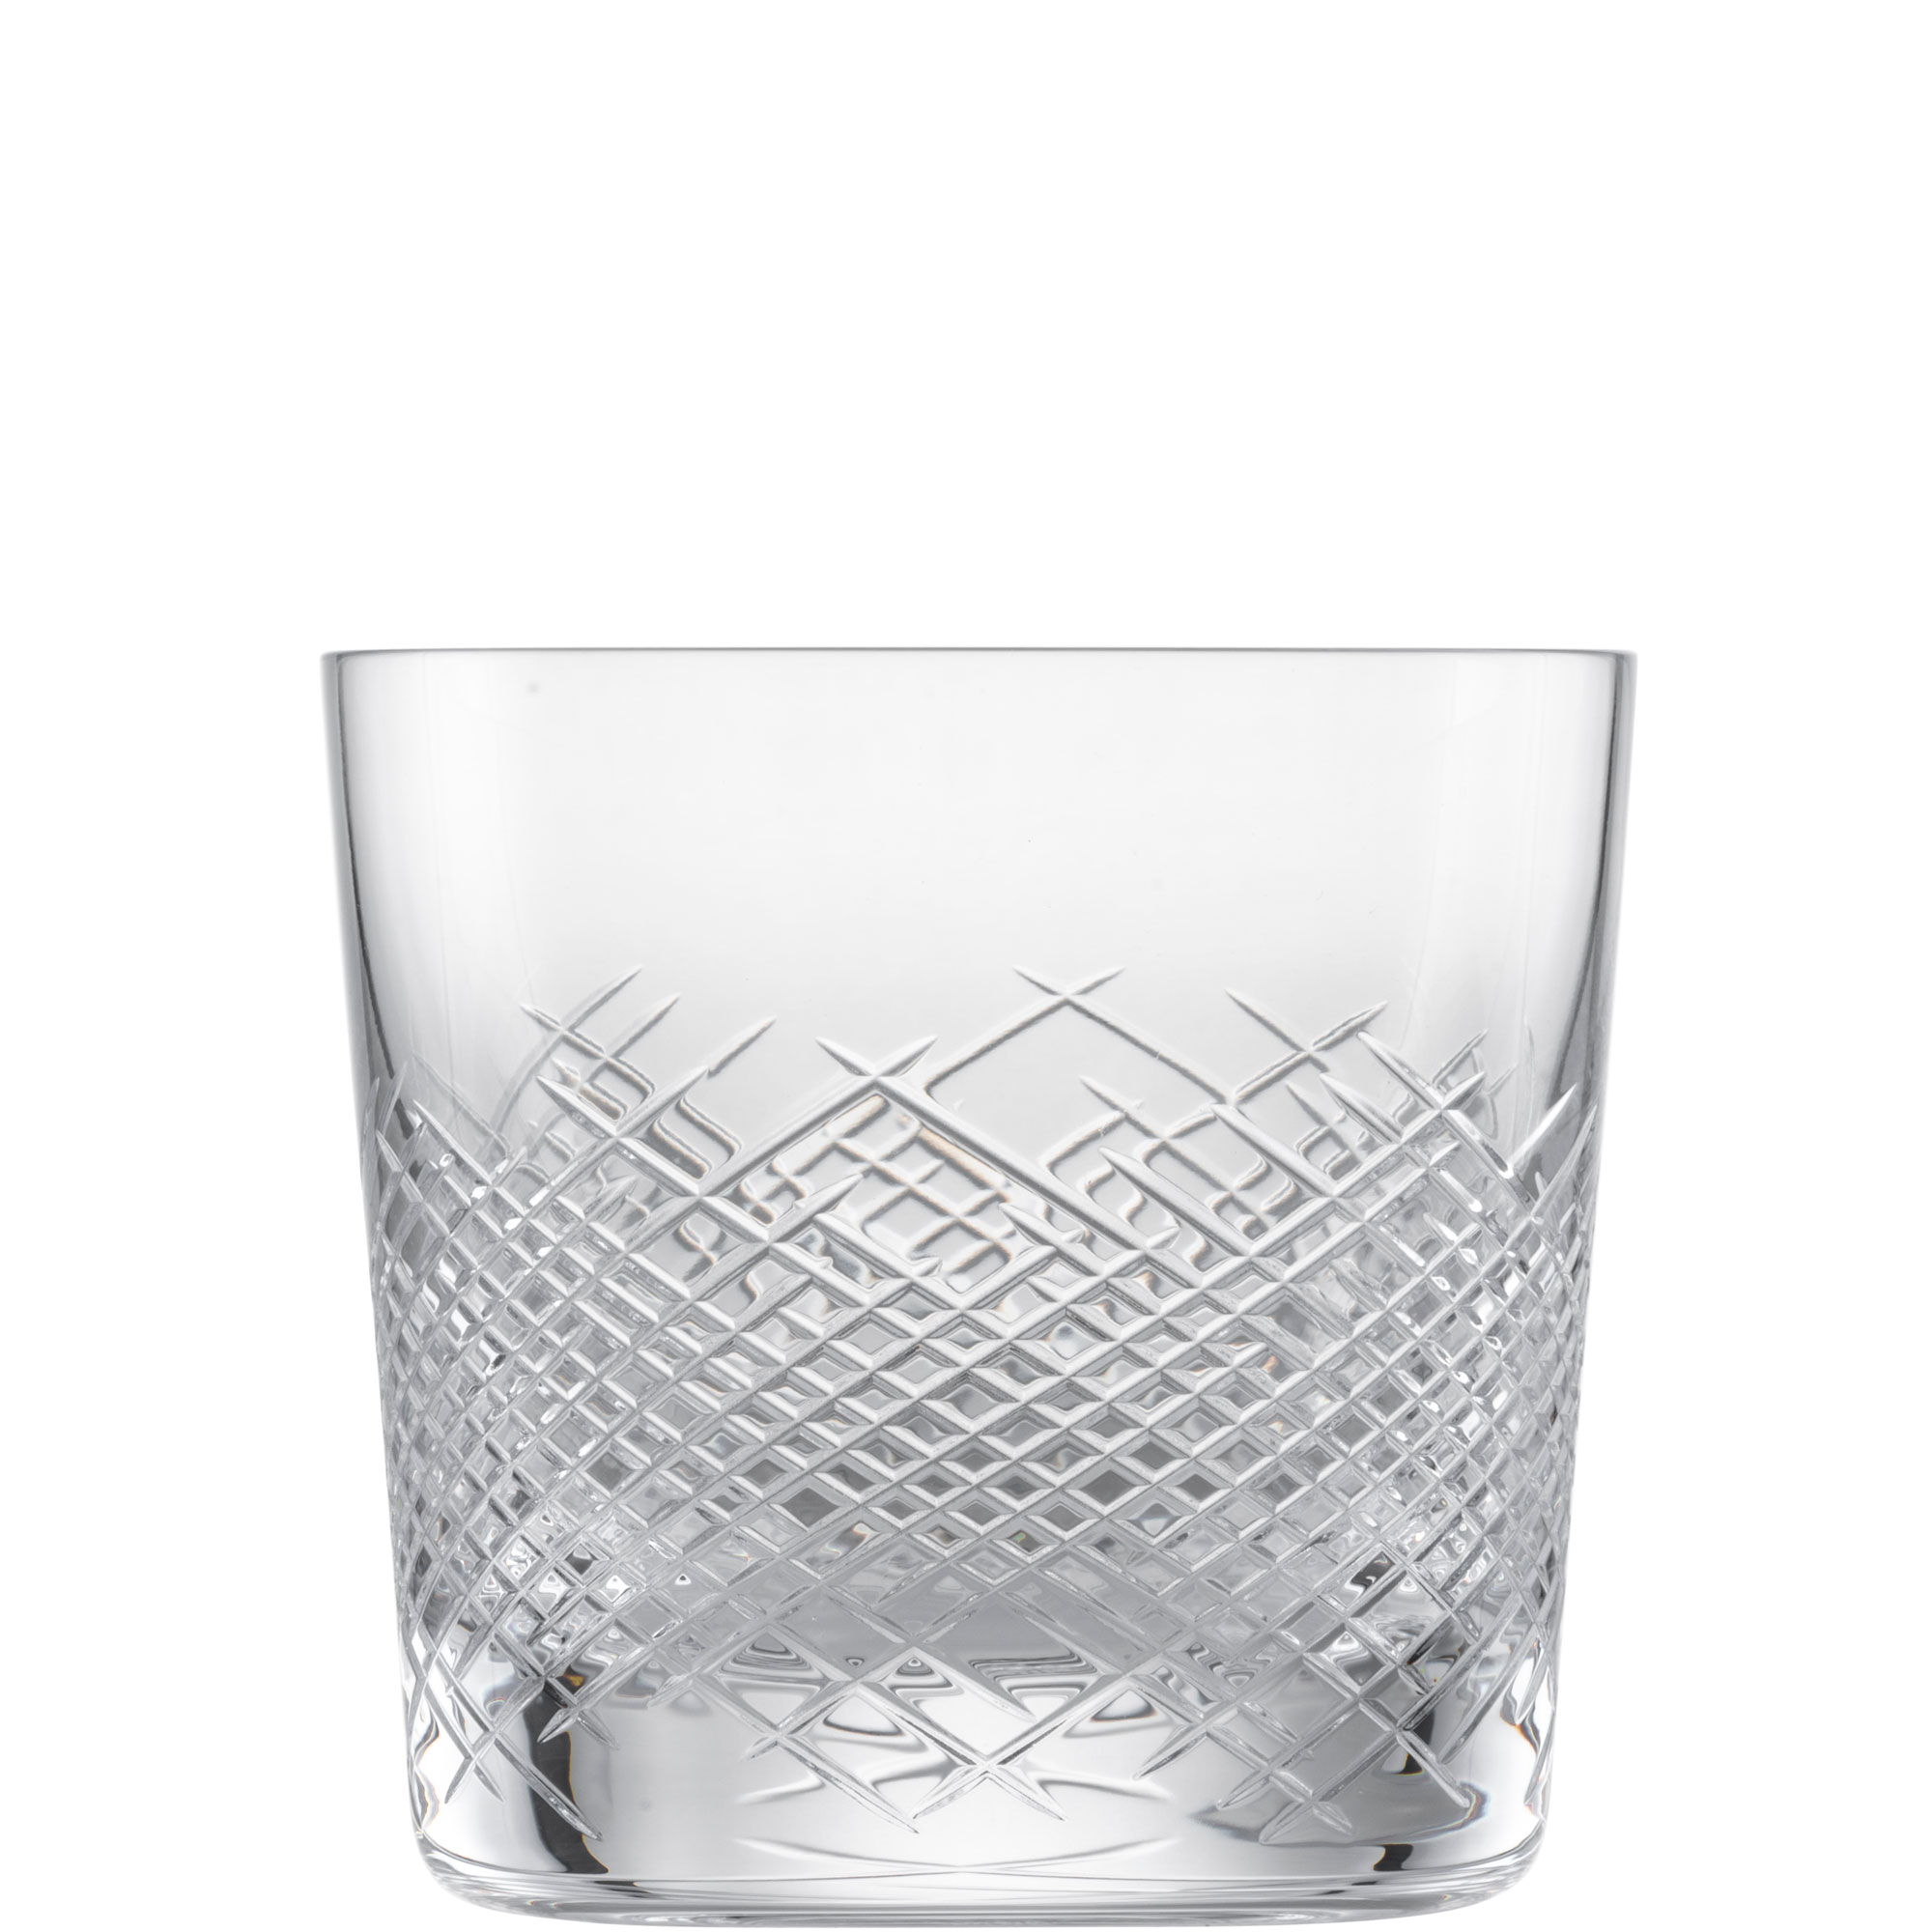 Whiskyglas Hommage Comète, Zwiesel Glas - 399ml